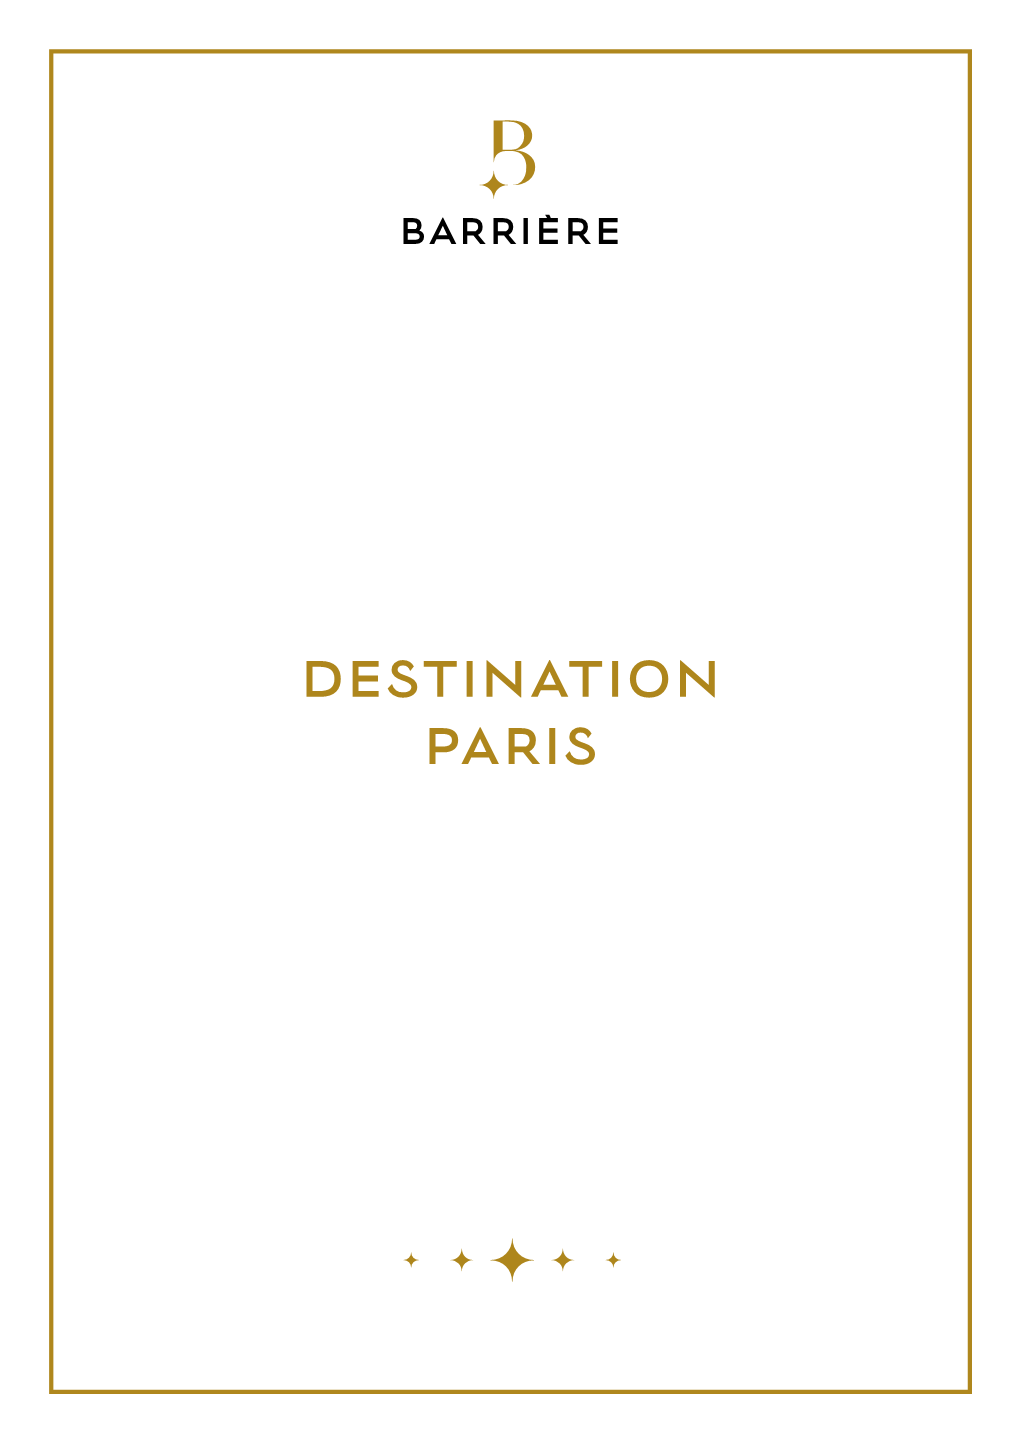 Destination Paris Paris